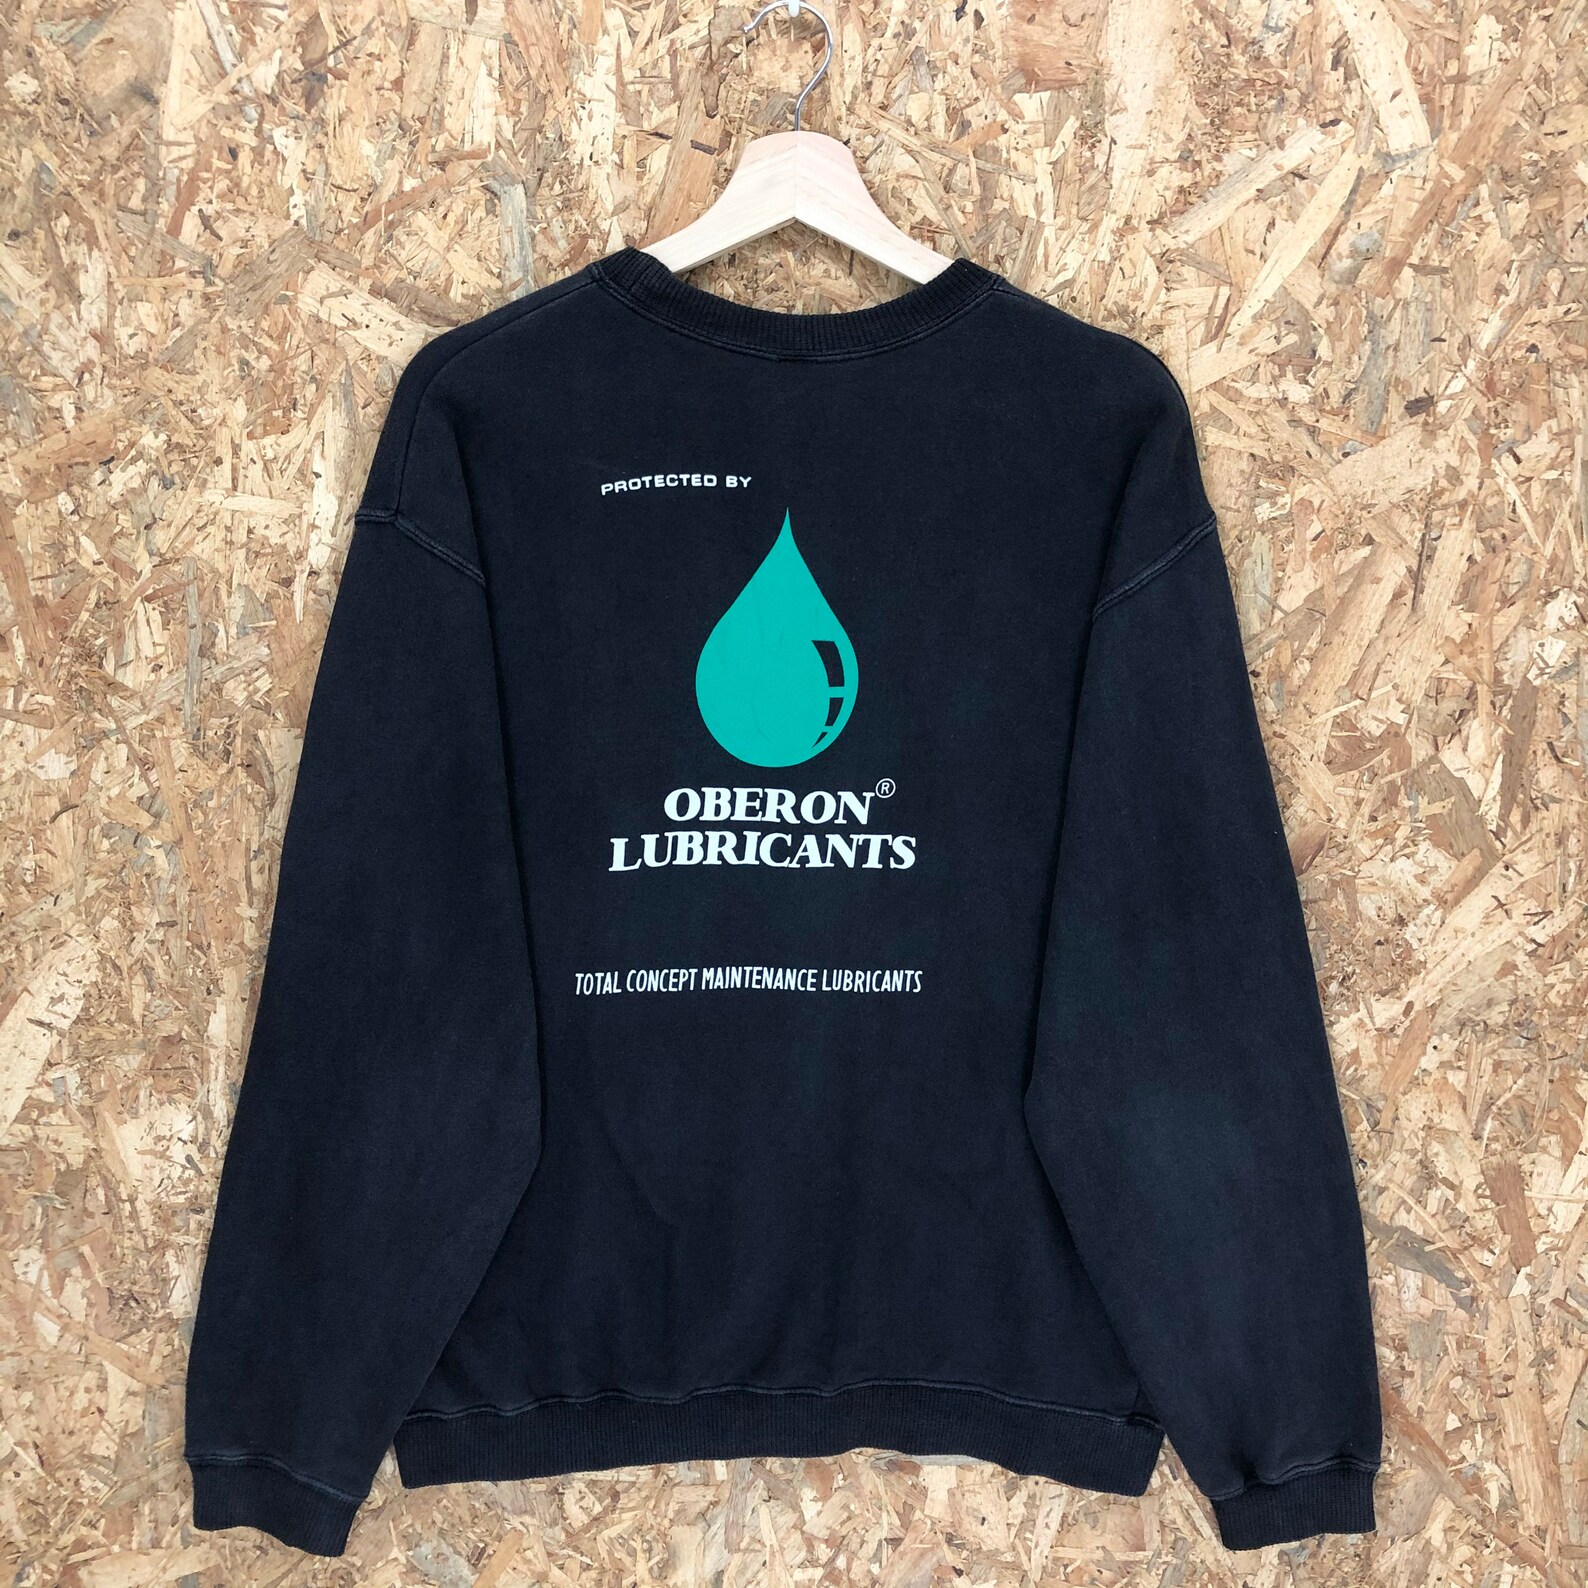 Vintage Oberon Lubricants Crewneck Sweatshirt | Etsy